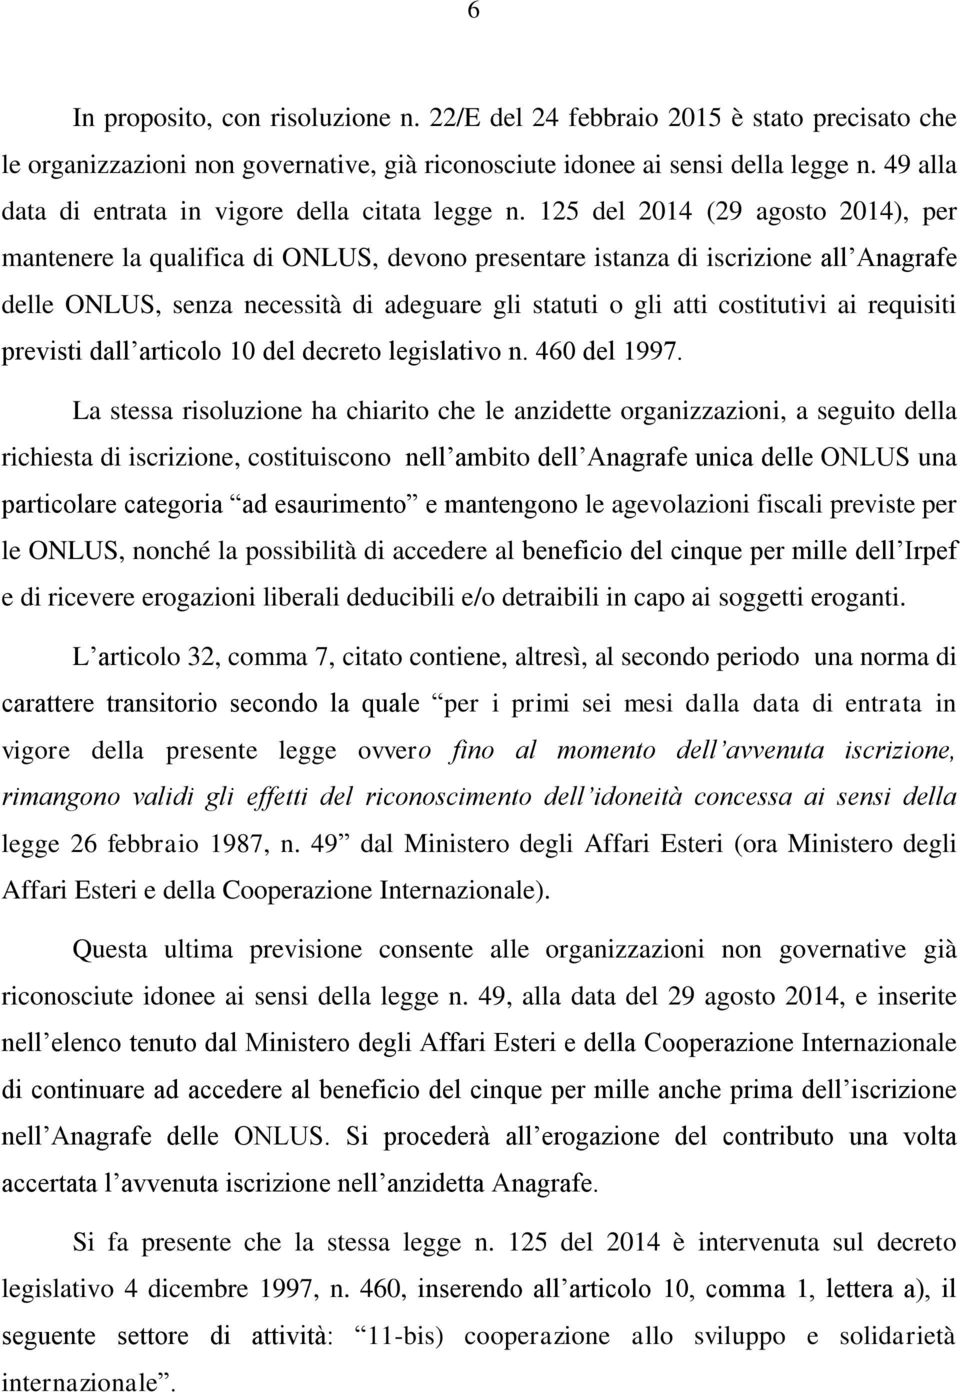 125 del 2014 (29 agosto 2014), per mantenere la qualifica di ONLUS, devono presentare istanza di iscrizione all Anagrafe delle ONLUS, senza necessità di adeguare gli statuti o gli atti costitutivi ai